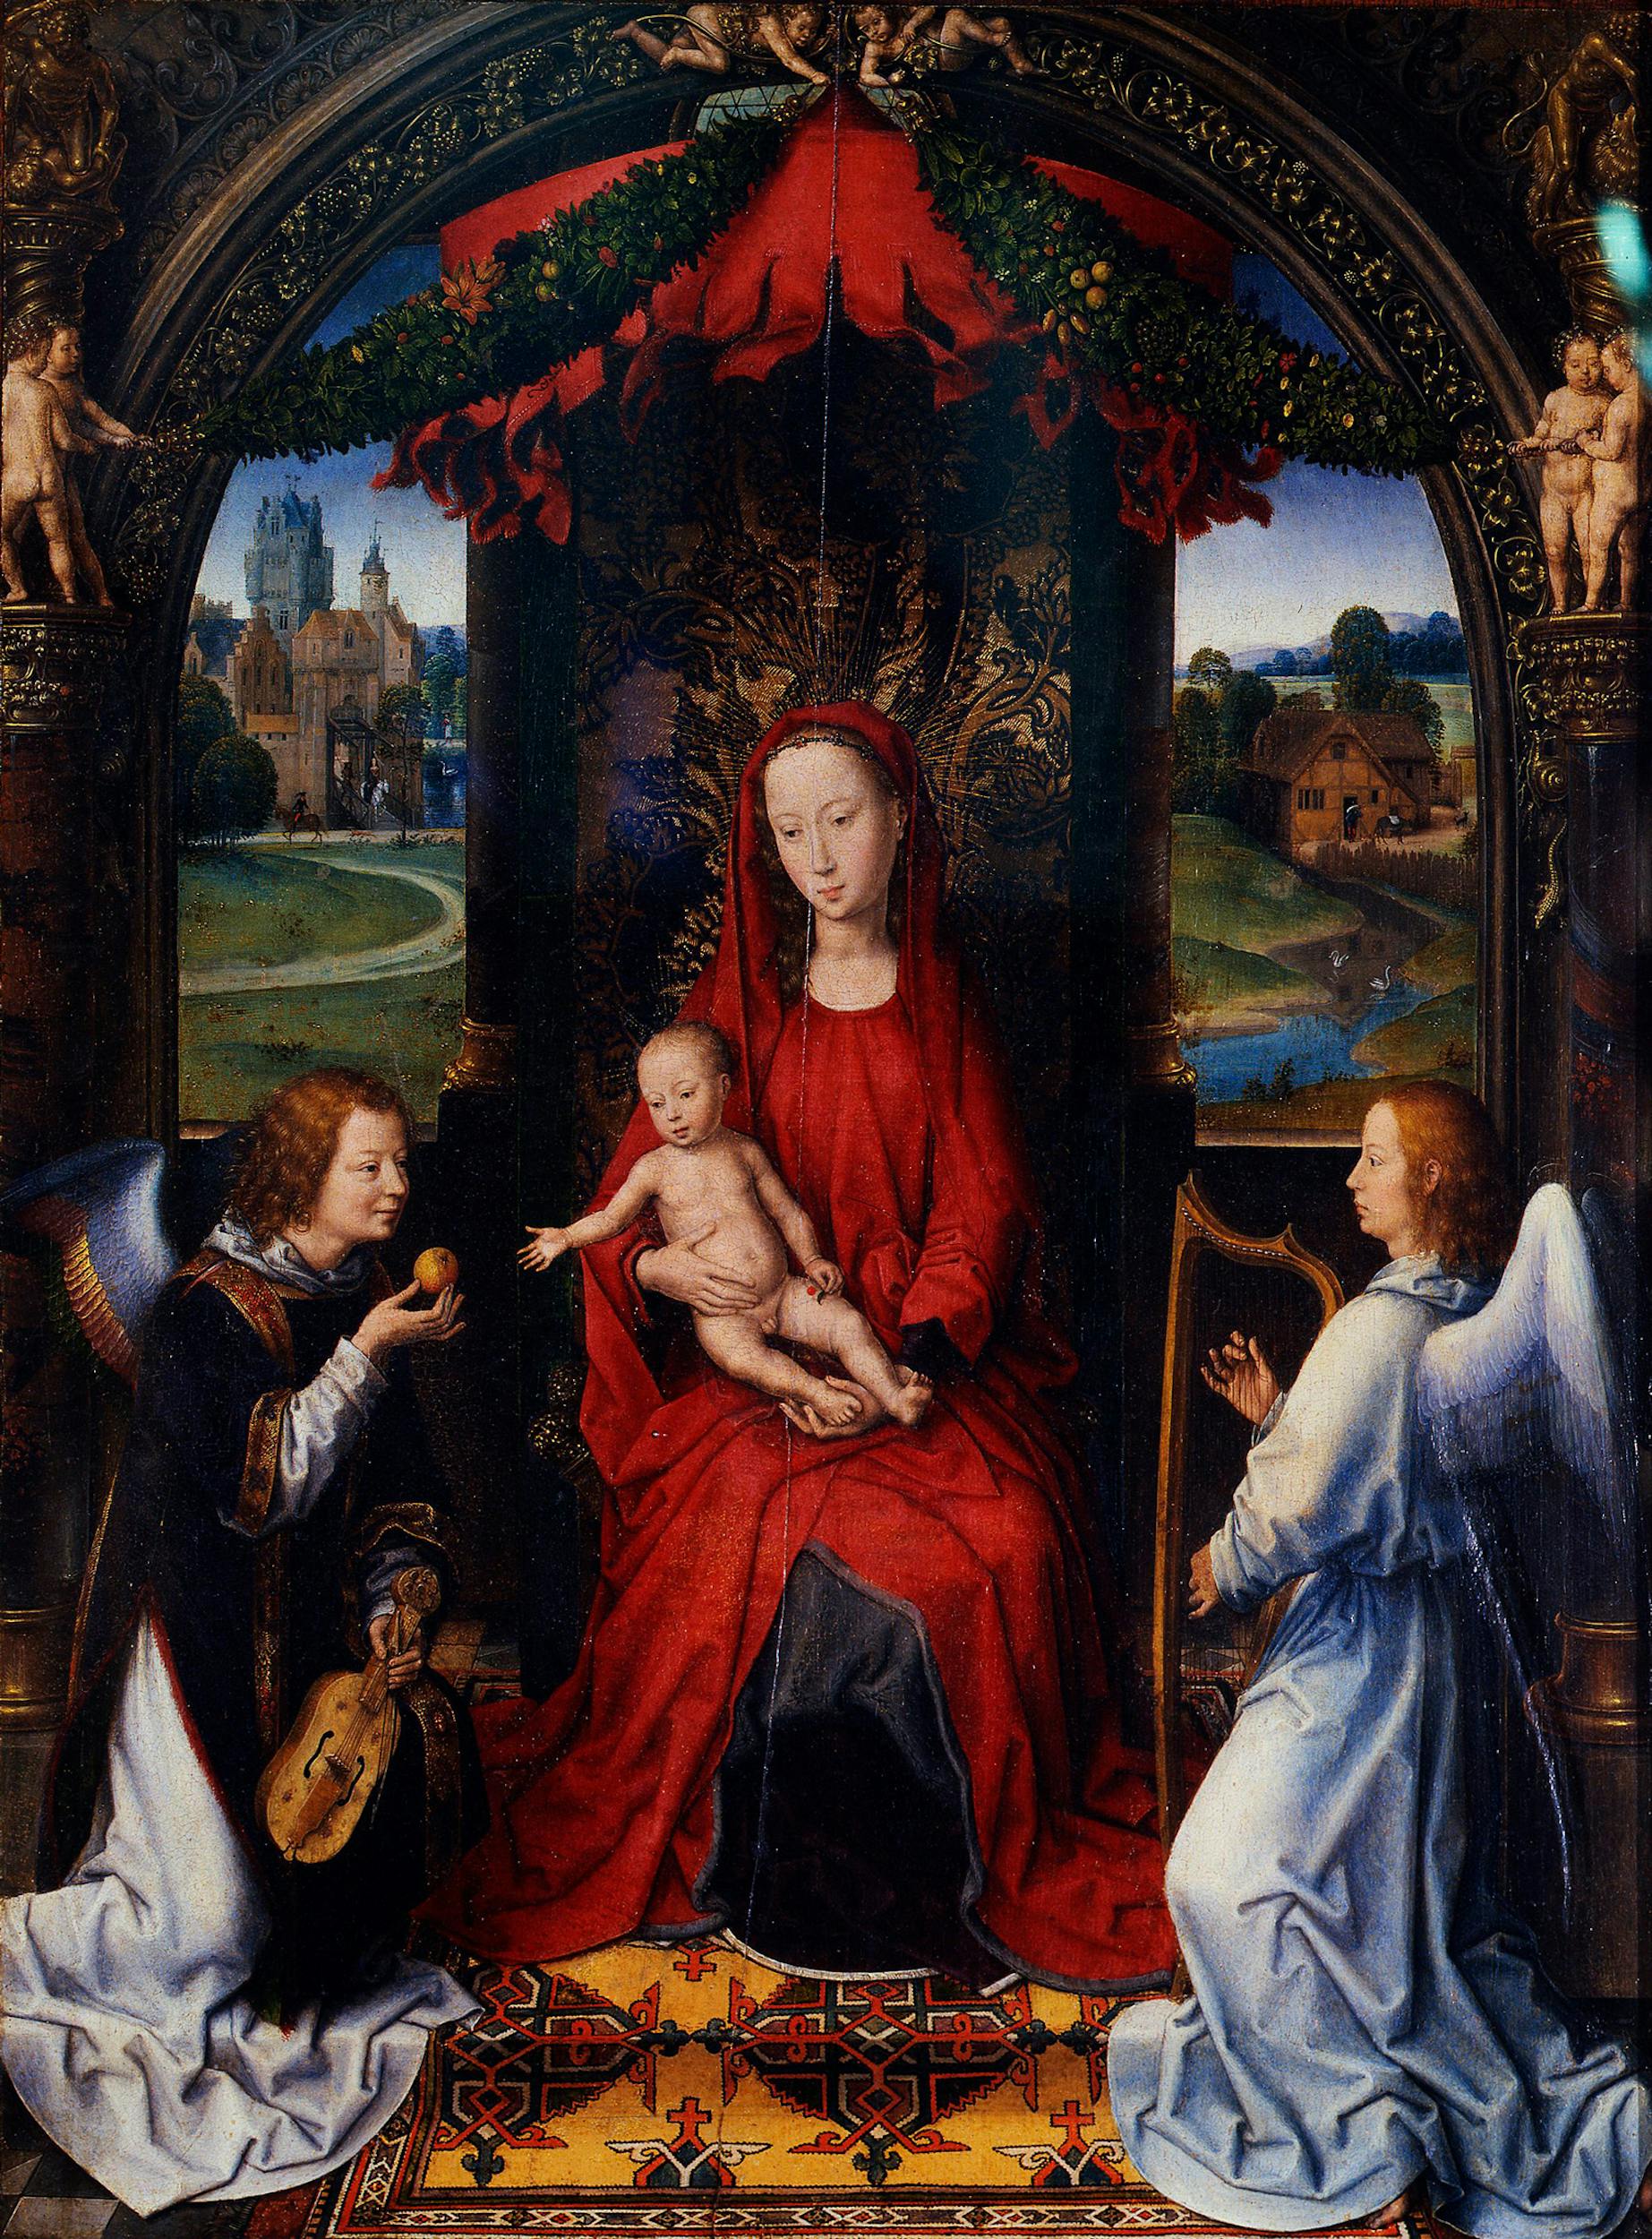 Hans Memling (Seligenstadt, Germania 1430 - Bruges, Belgio 1494), Madonna con Bambino e angeli, XV secolo (1480), olio su tavola. Firenze, Galleria degli Uffizi